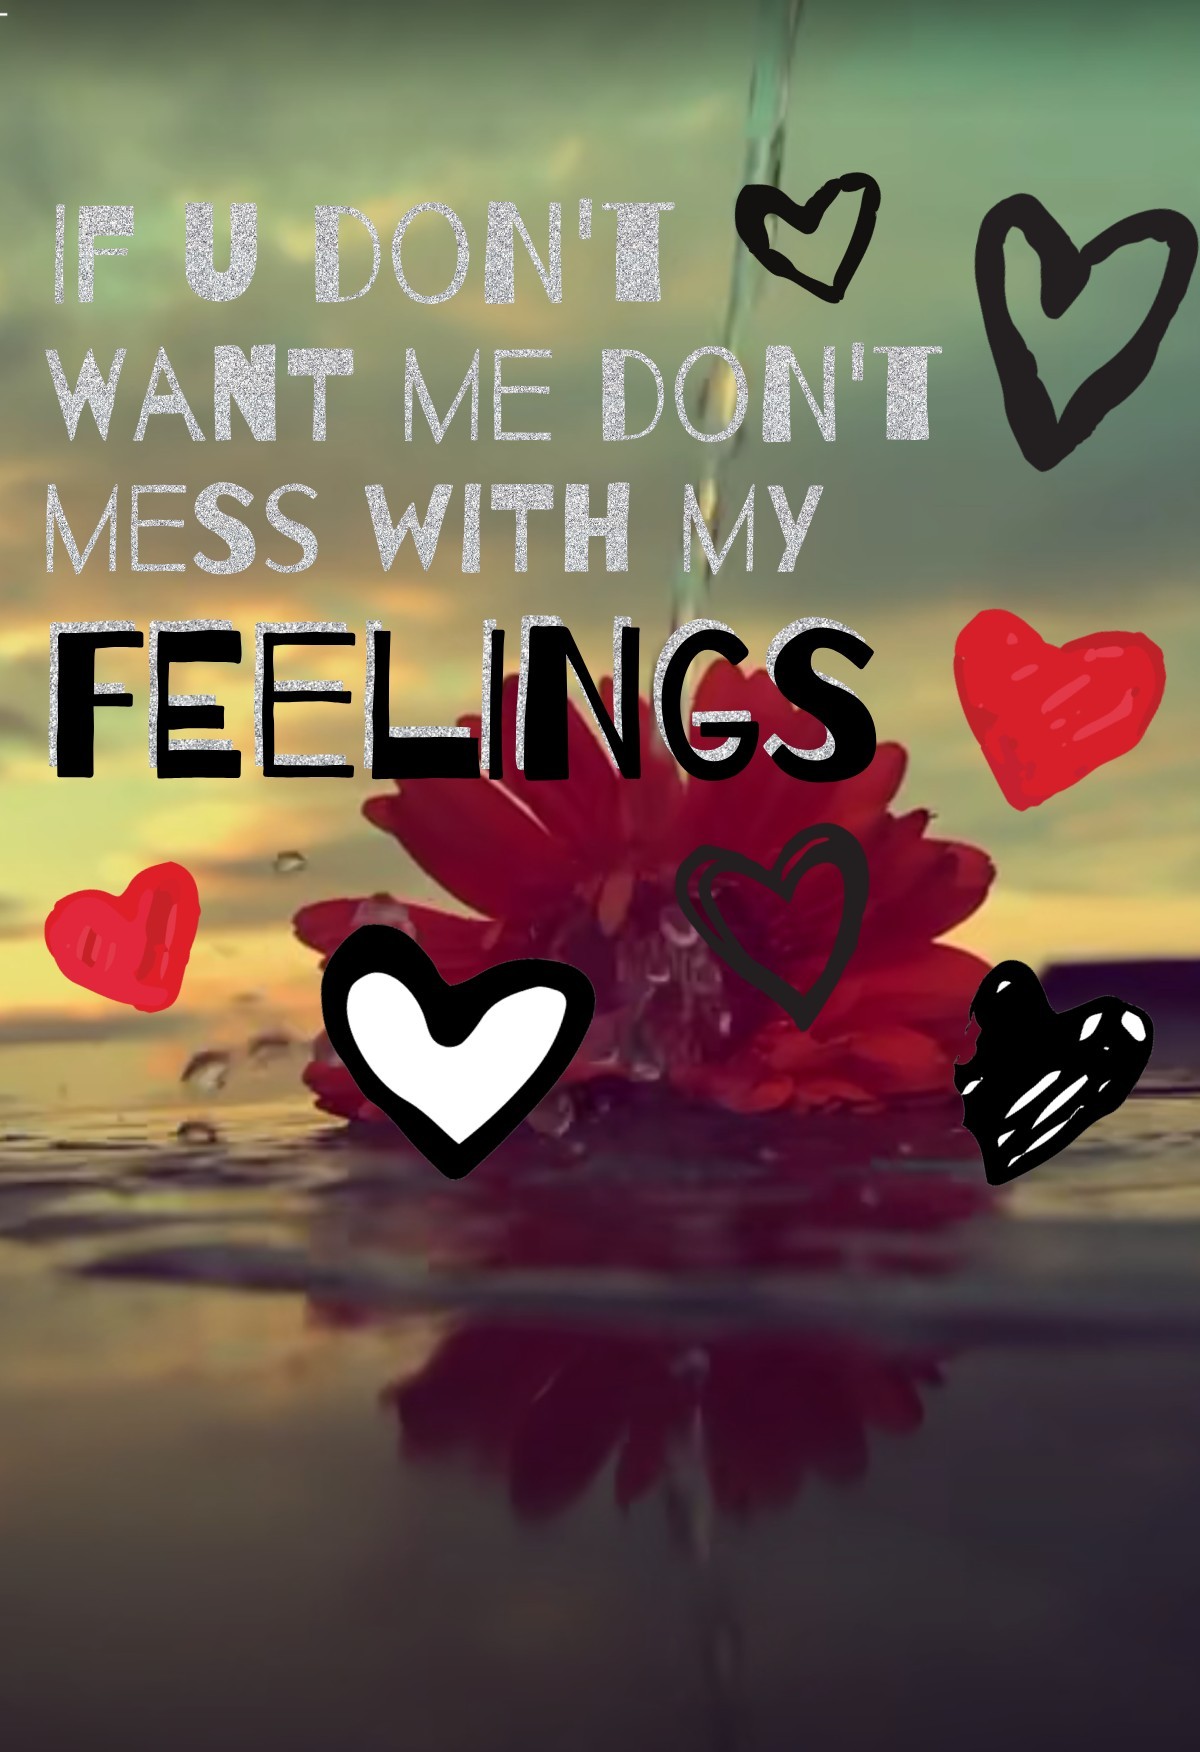 💣Tap💣
ur feelings matter